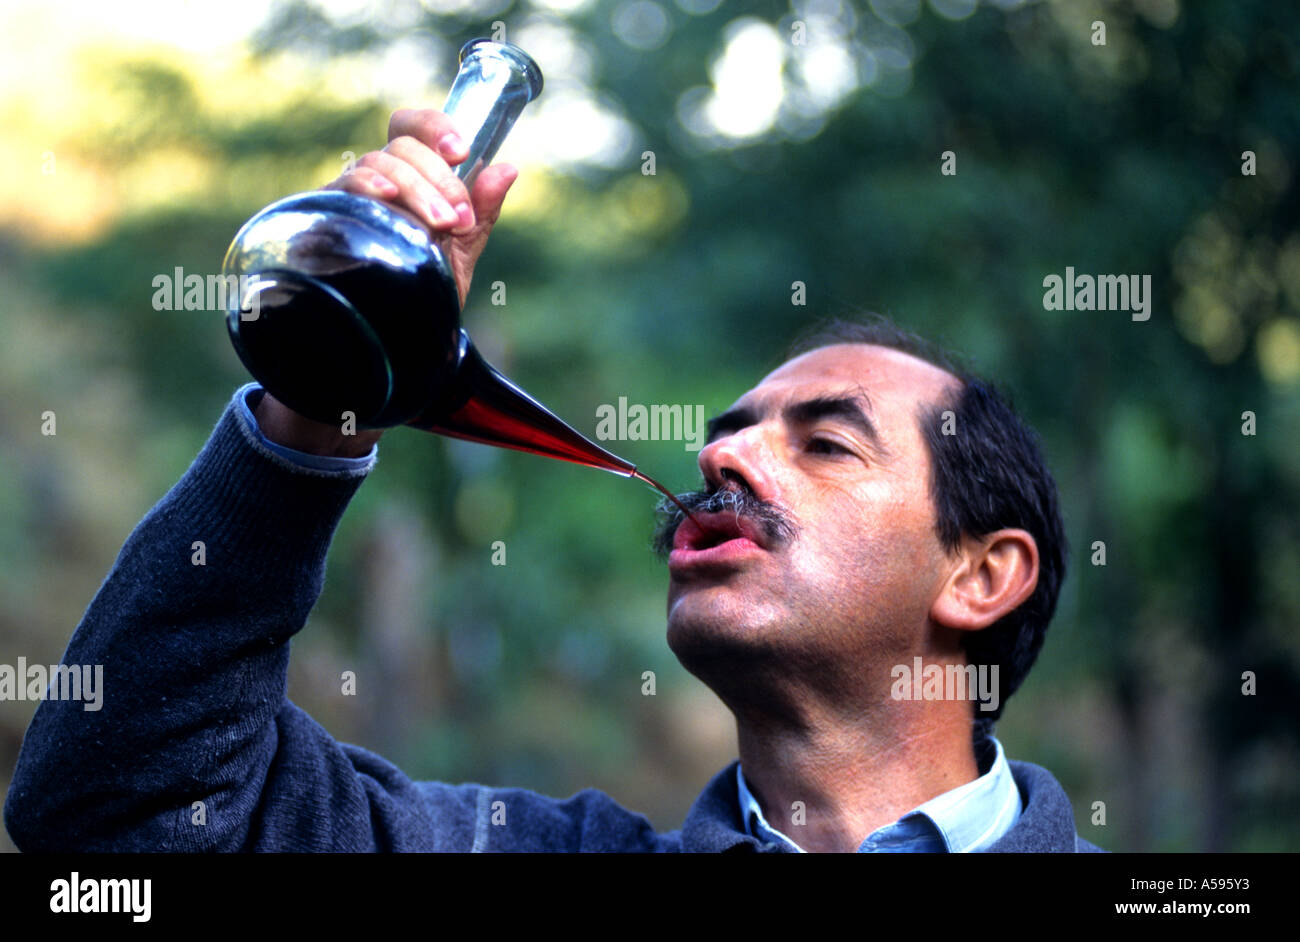 Spanien-Mann Geschmack Test Probe Glas Wein Verkostung roten Baskenmütze haben nehmen Trinker Toper Säufer Stockfoto